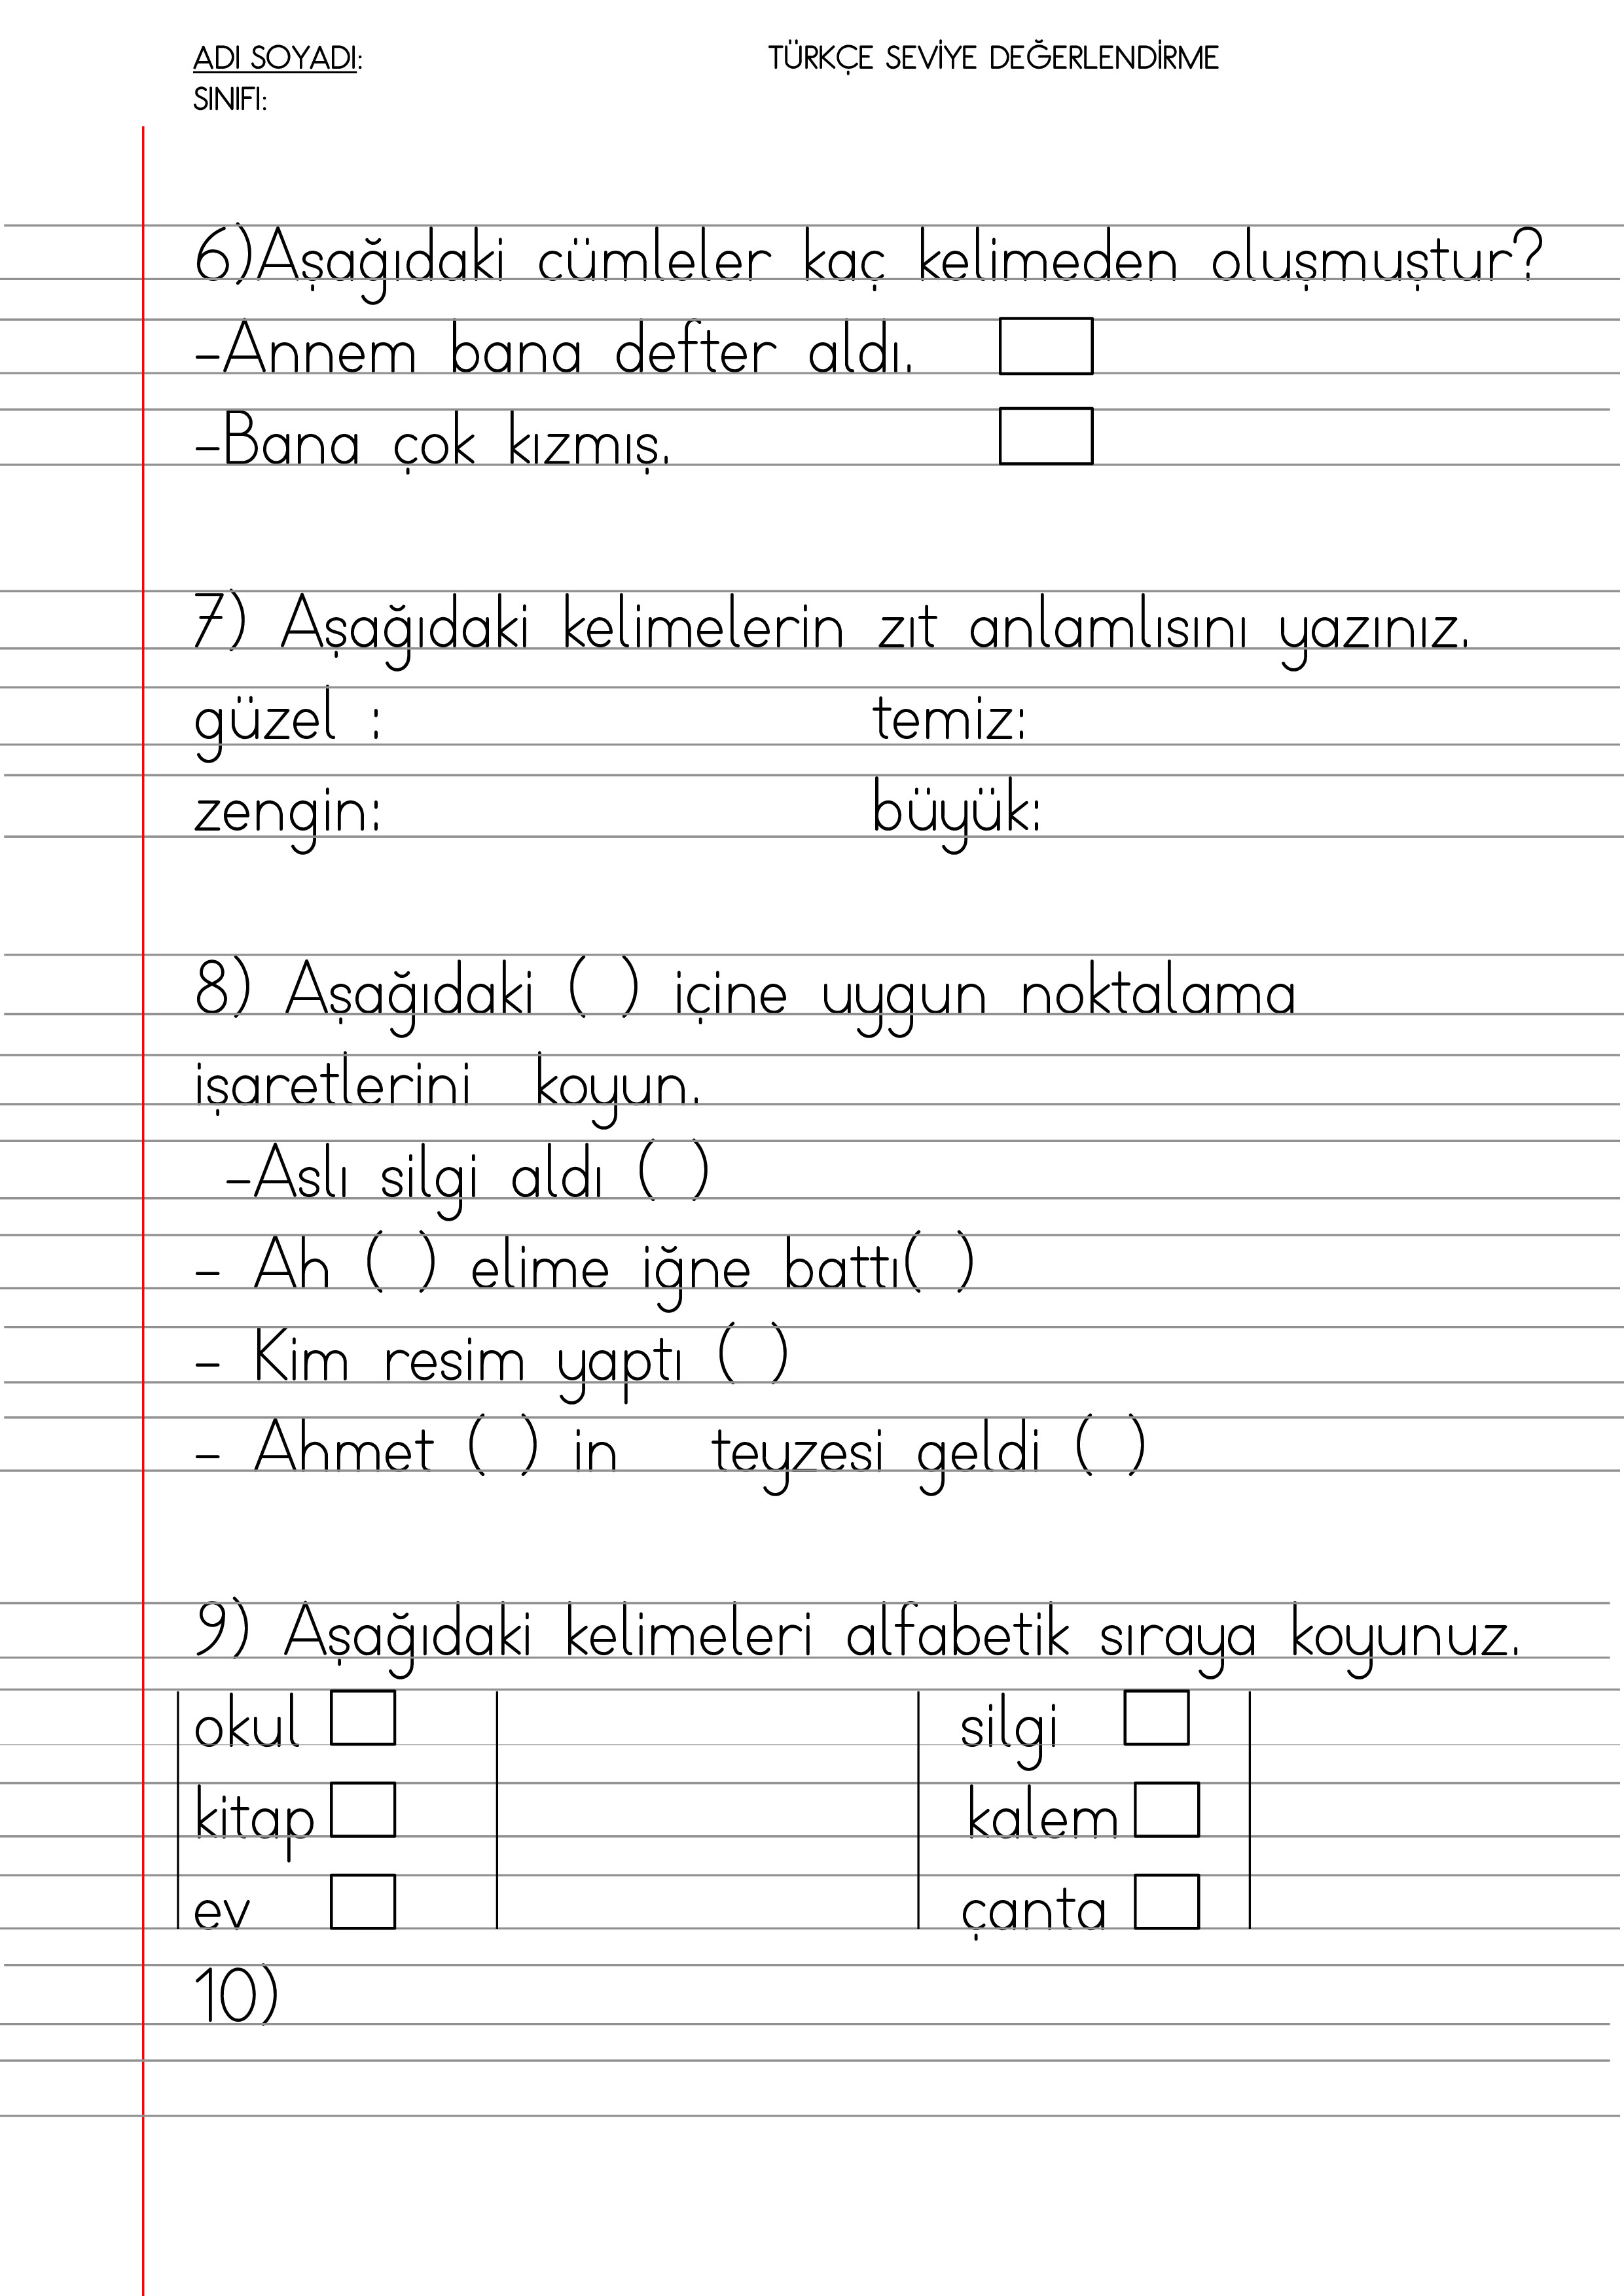 1. sınıf türkçe değerlendirme çalışması